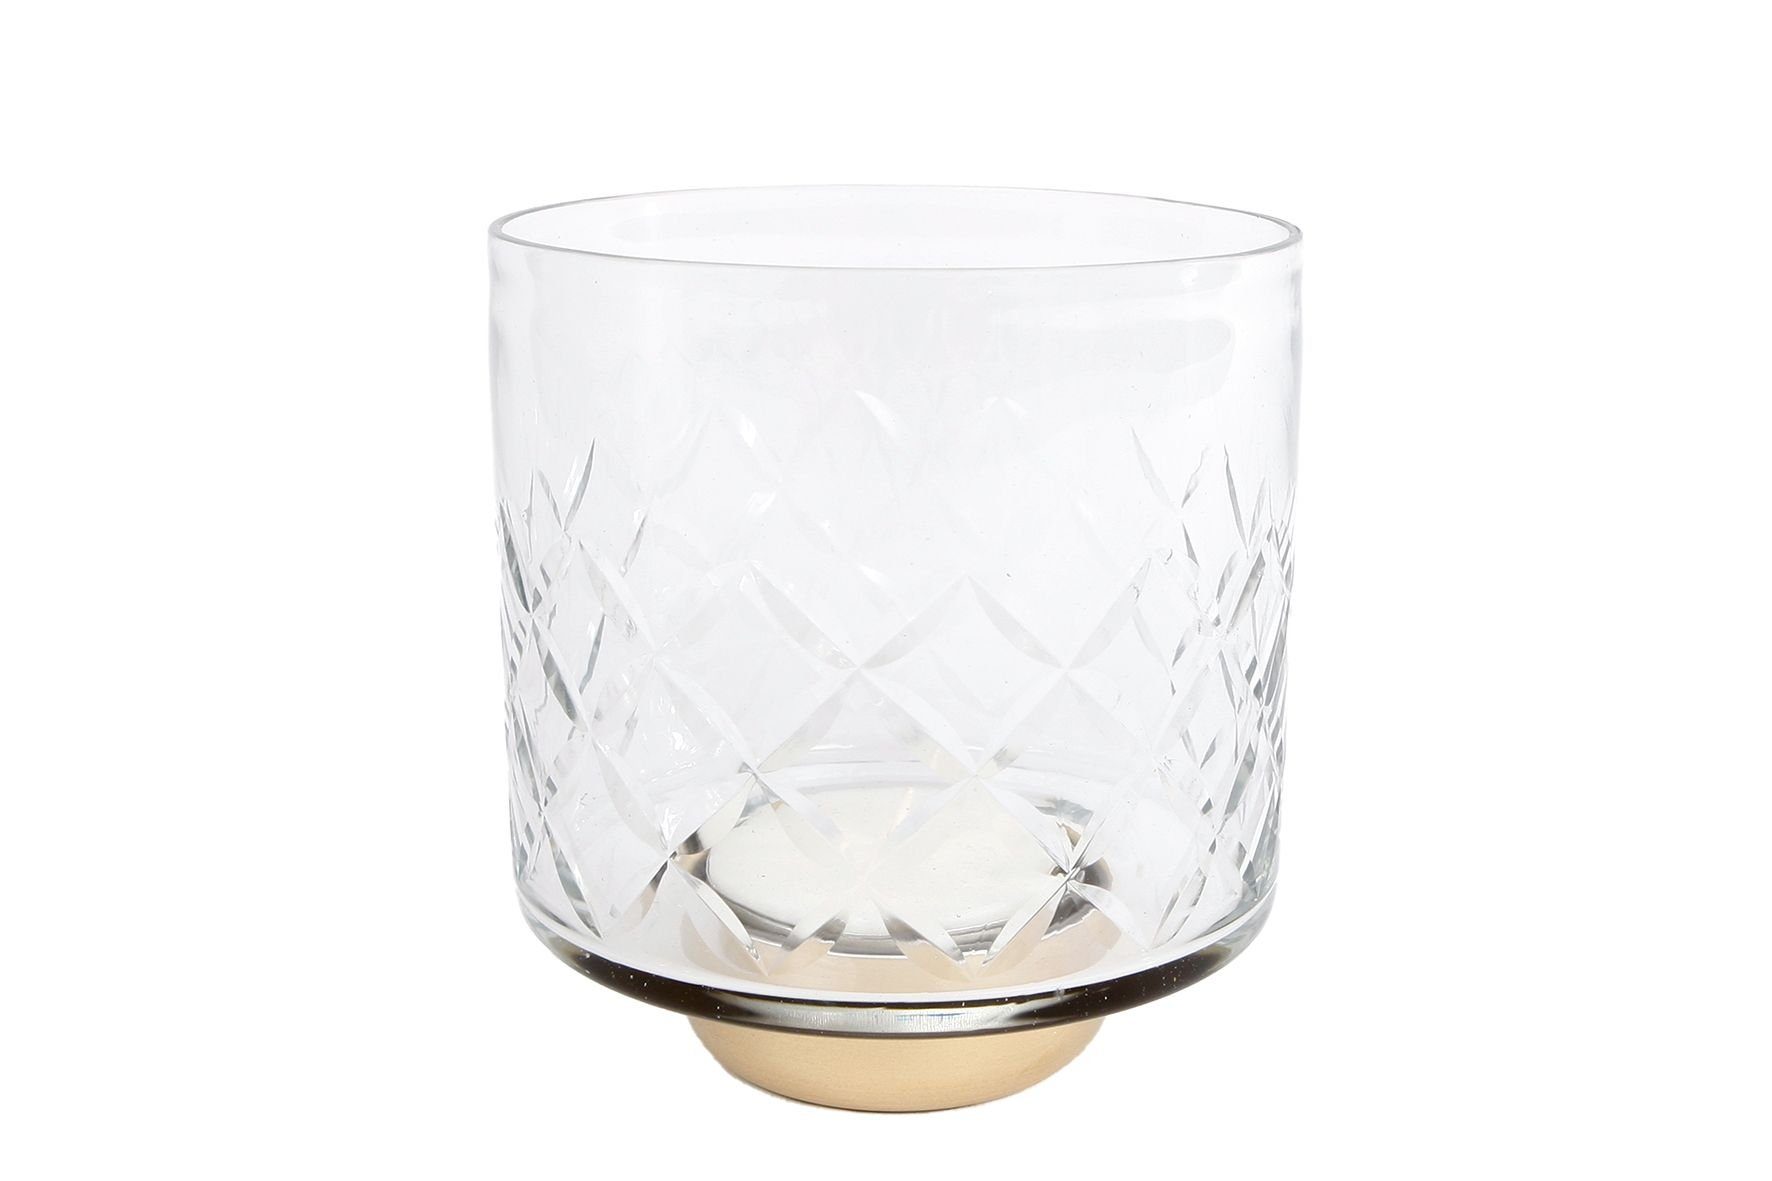 Rivanto Teelichthalter Ria (1 St), Teelichtständer im klassischen Design, Größe M, Maße 11.5x11.5x13 cm